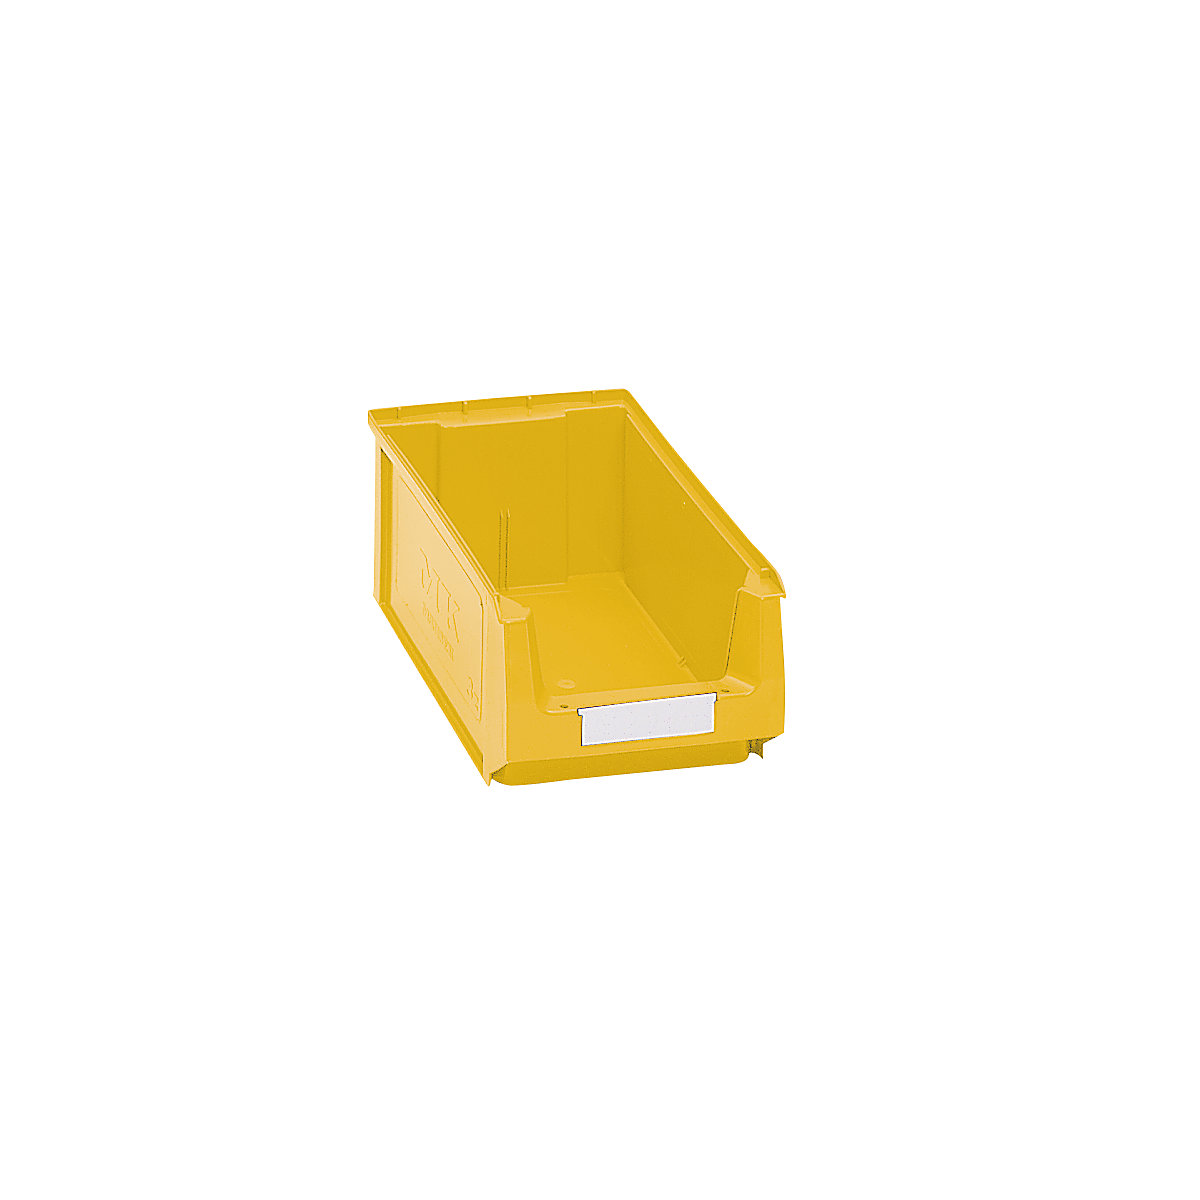 Přepravka s viditelným obsahem z polyetylénu – mauser, d x š x v 350 x 210 x 140 mm, žlutá, bal.j. 14 ks-8